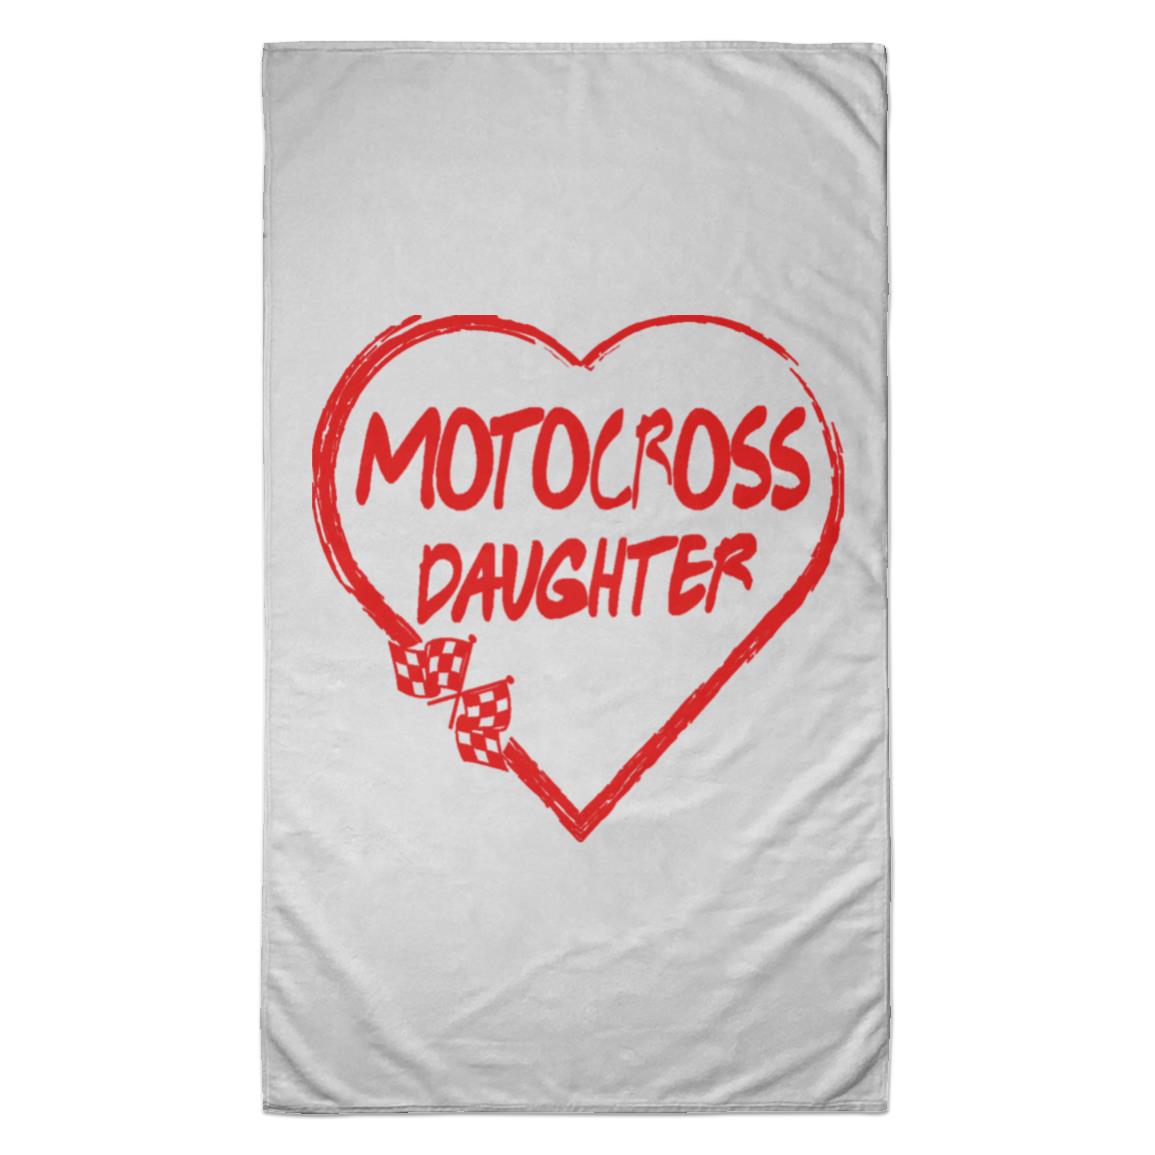 Motocross Daughter Heart Towel - 35x60